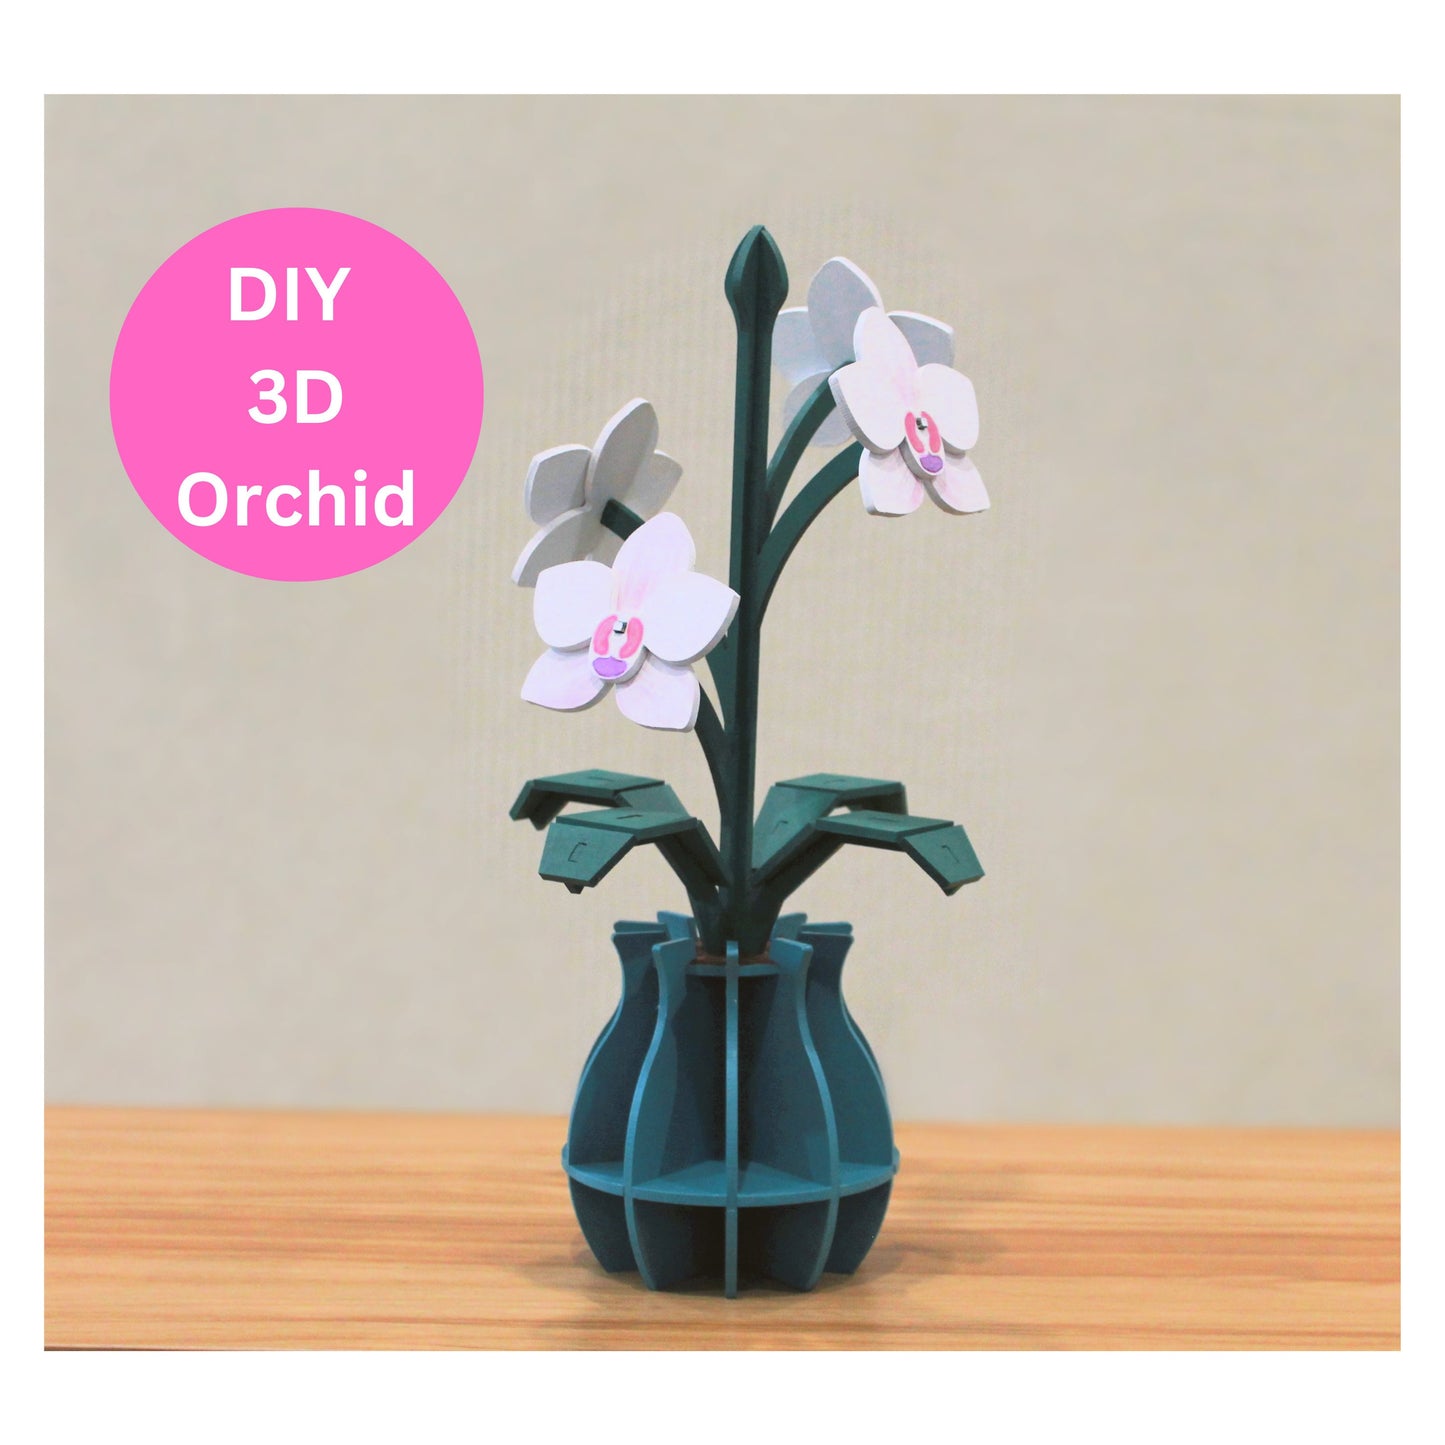 DIY 3D Orchid Plant Kit